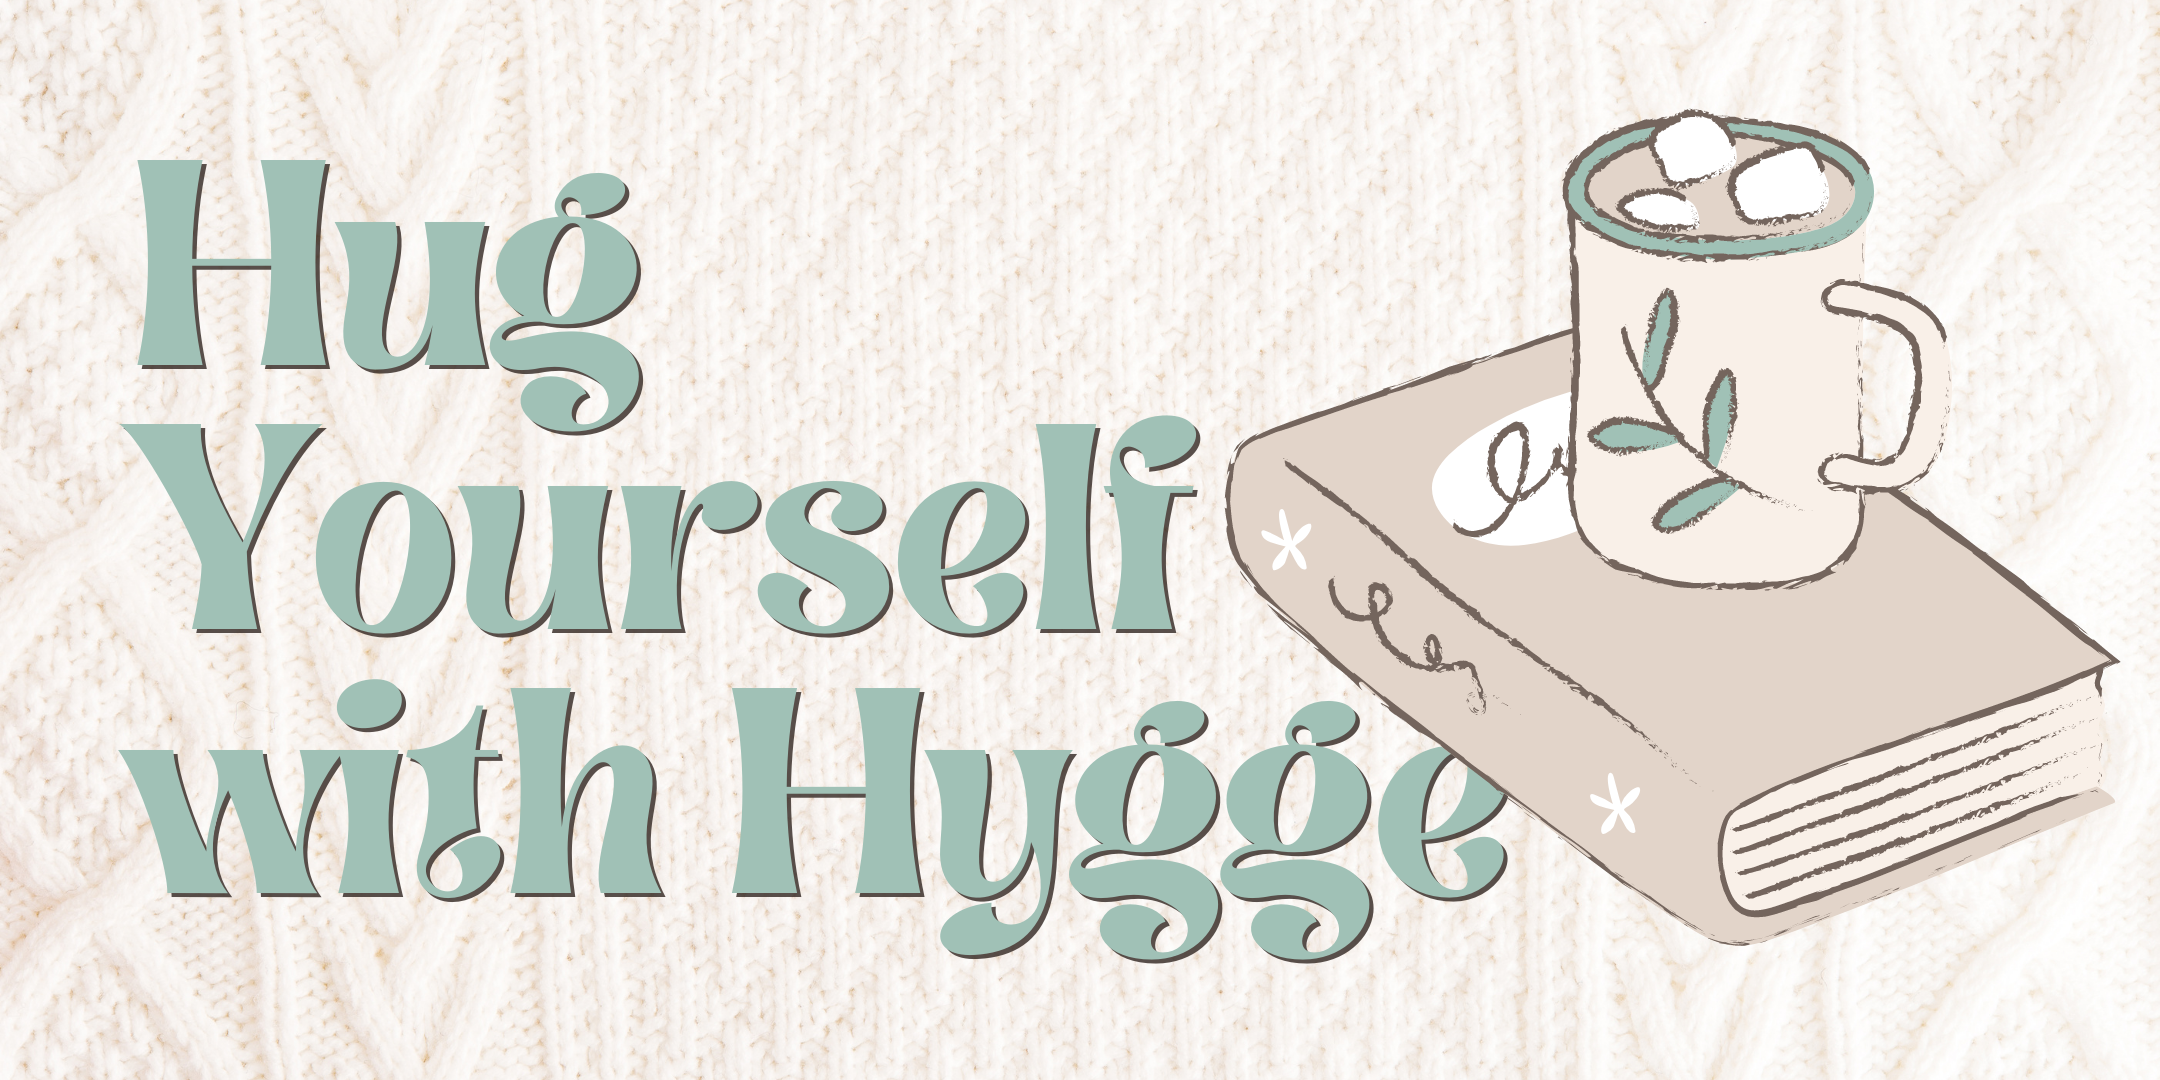 image of "Hug Yourself with Hygge"